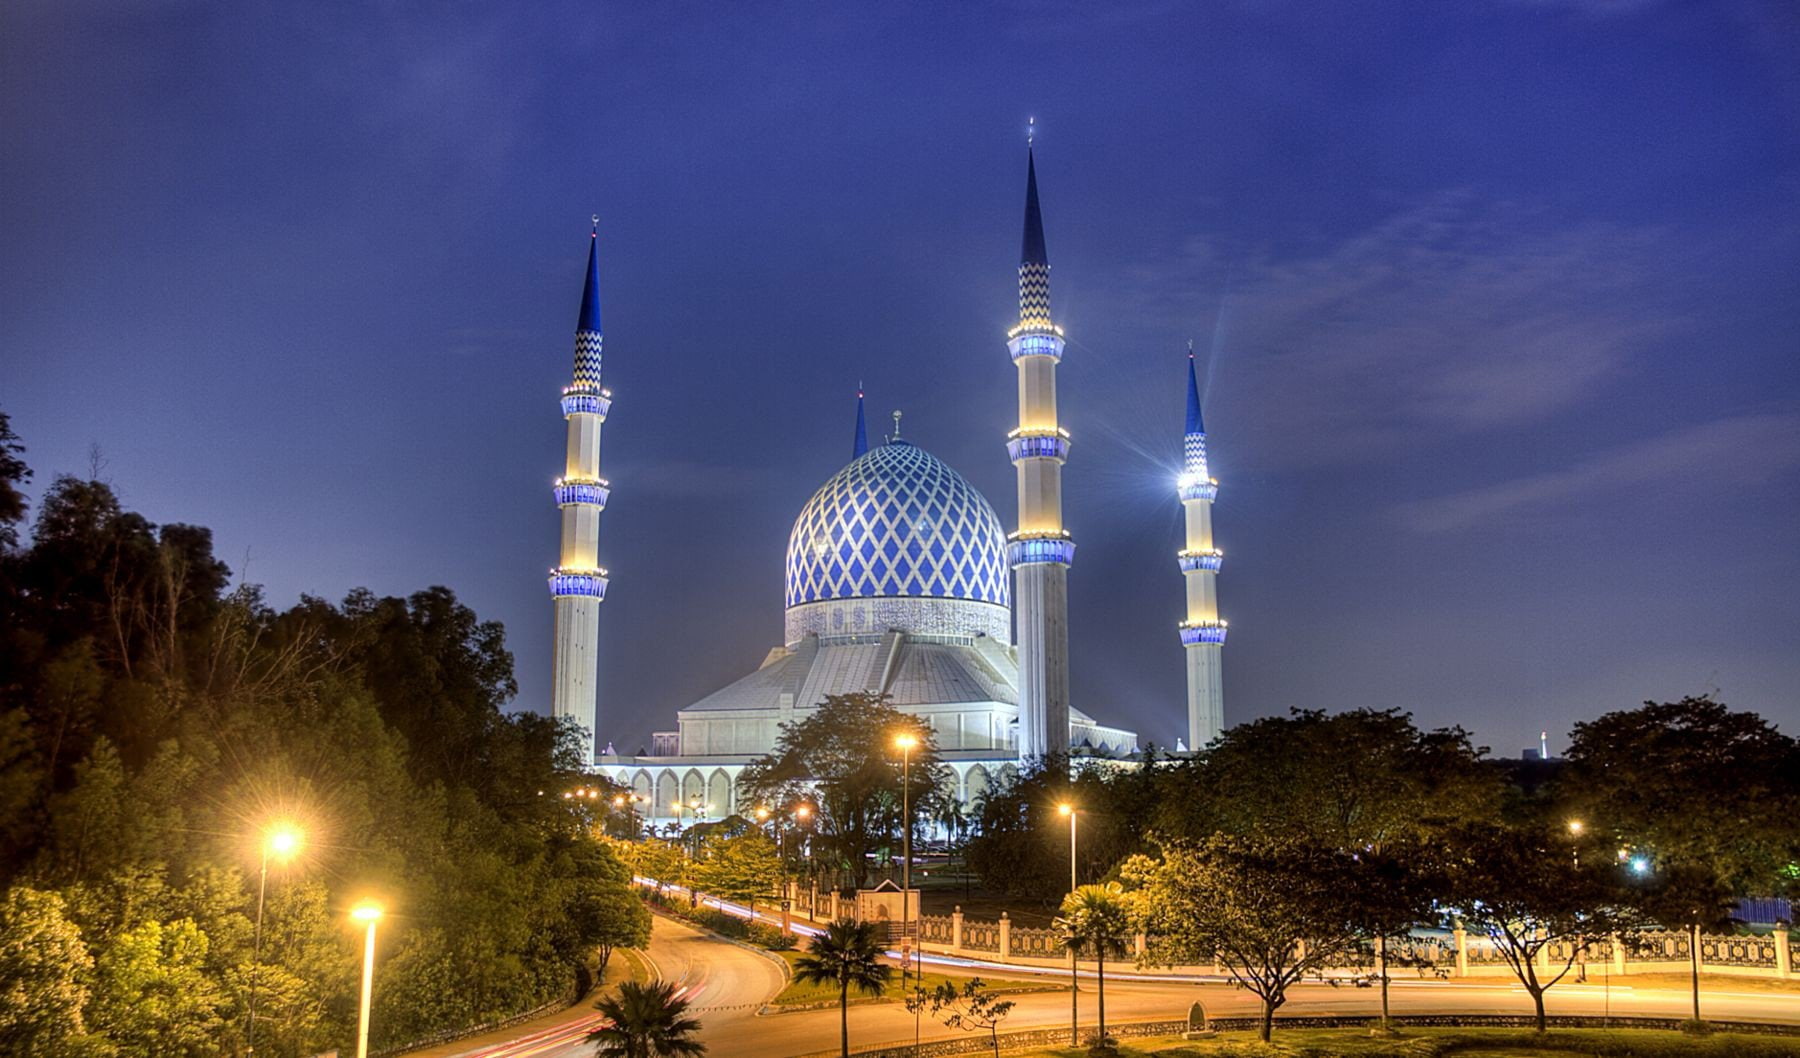 Mosques, Sultan Salahuddin Abdul Aziz Mosque, architecture